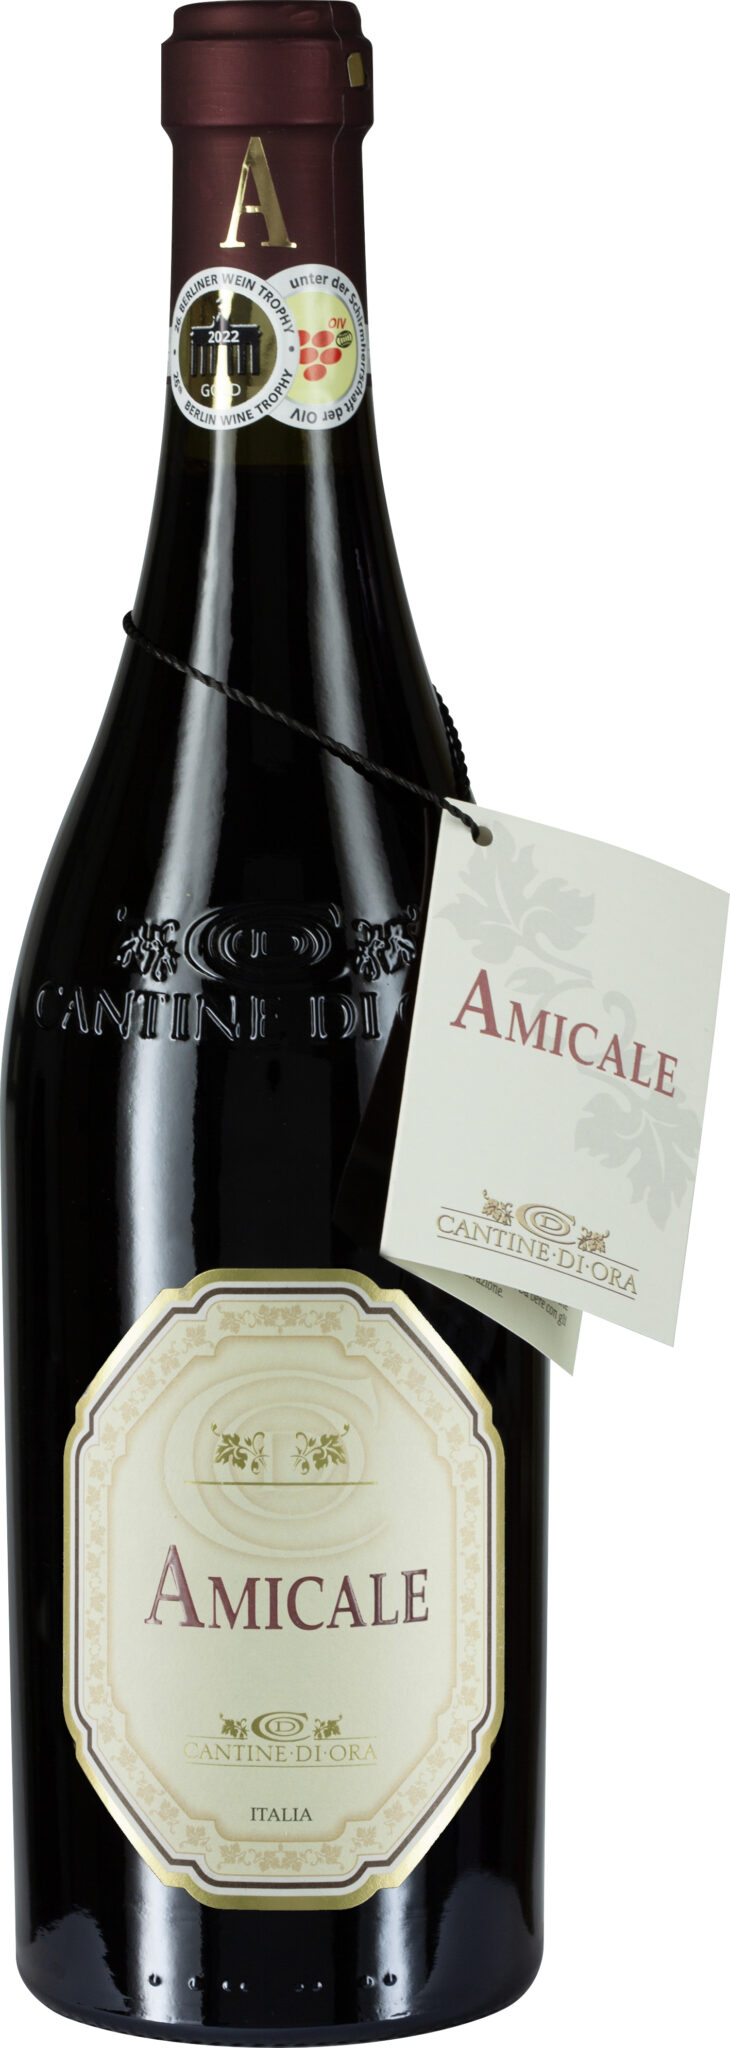 Rosso der-schmeckt-mir Amicale IGT bei Veneto bestellen